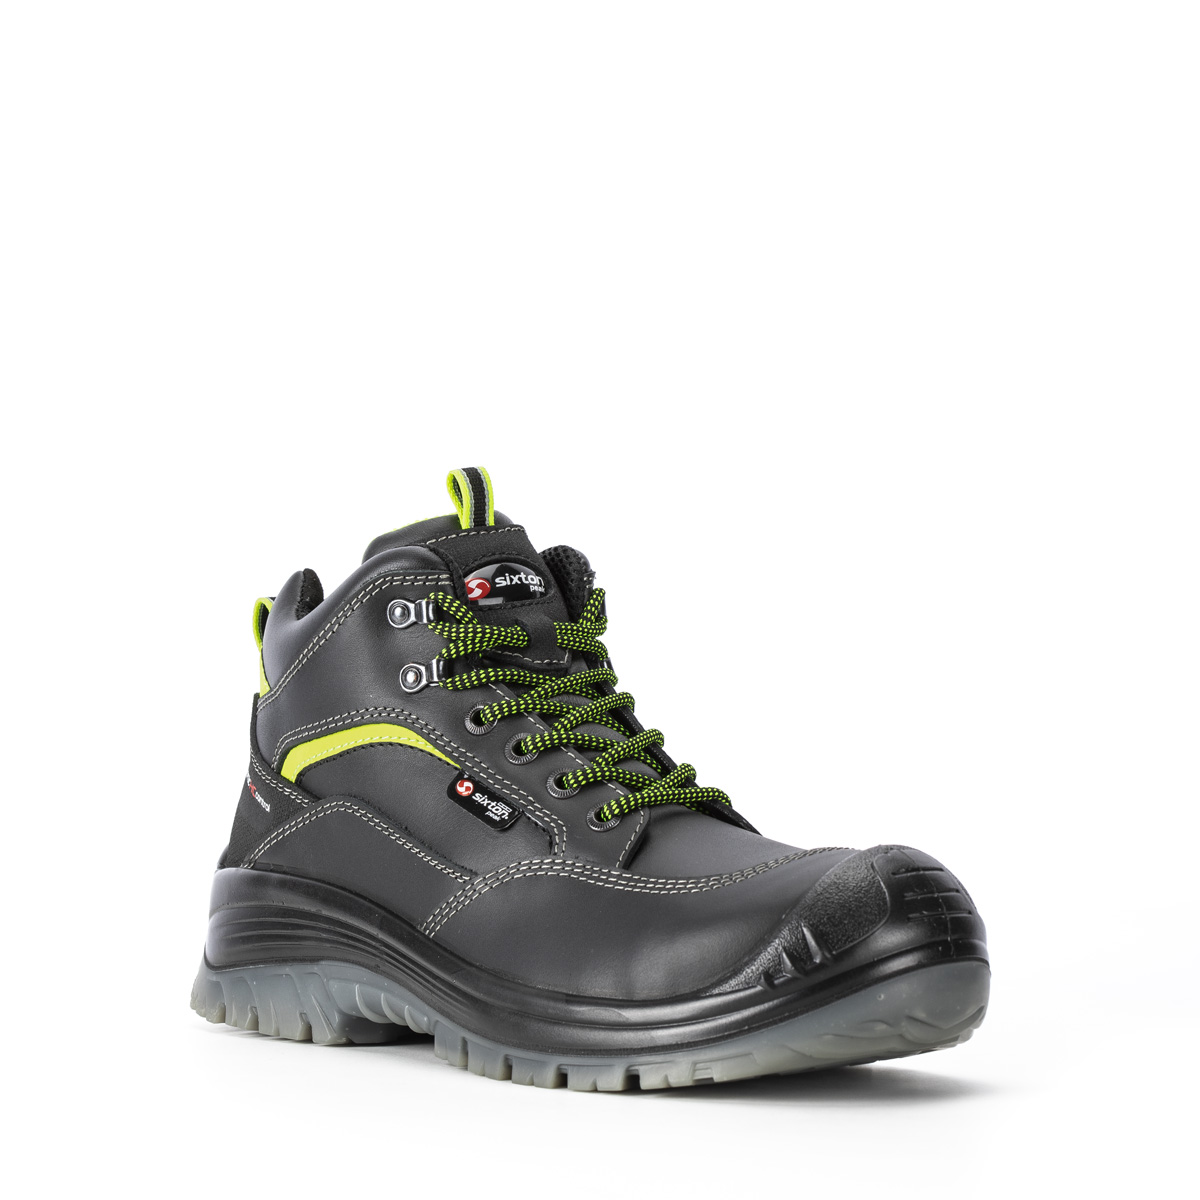 Endurance MONTAUK - Stiefel niedrig di Sixton modello 81154-11L SRC Shoes protezione *CI Peak S3 - classe Safety Codice con